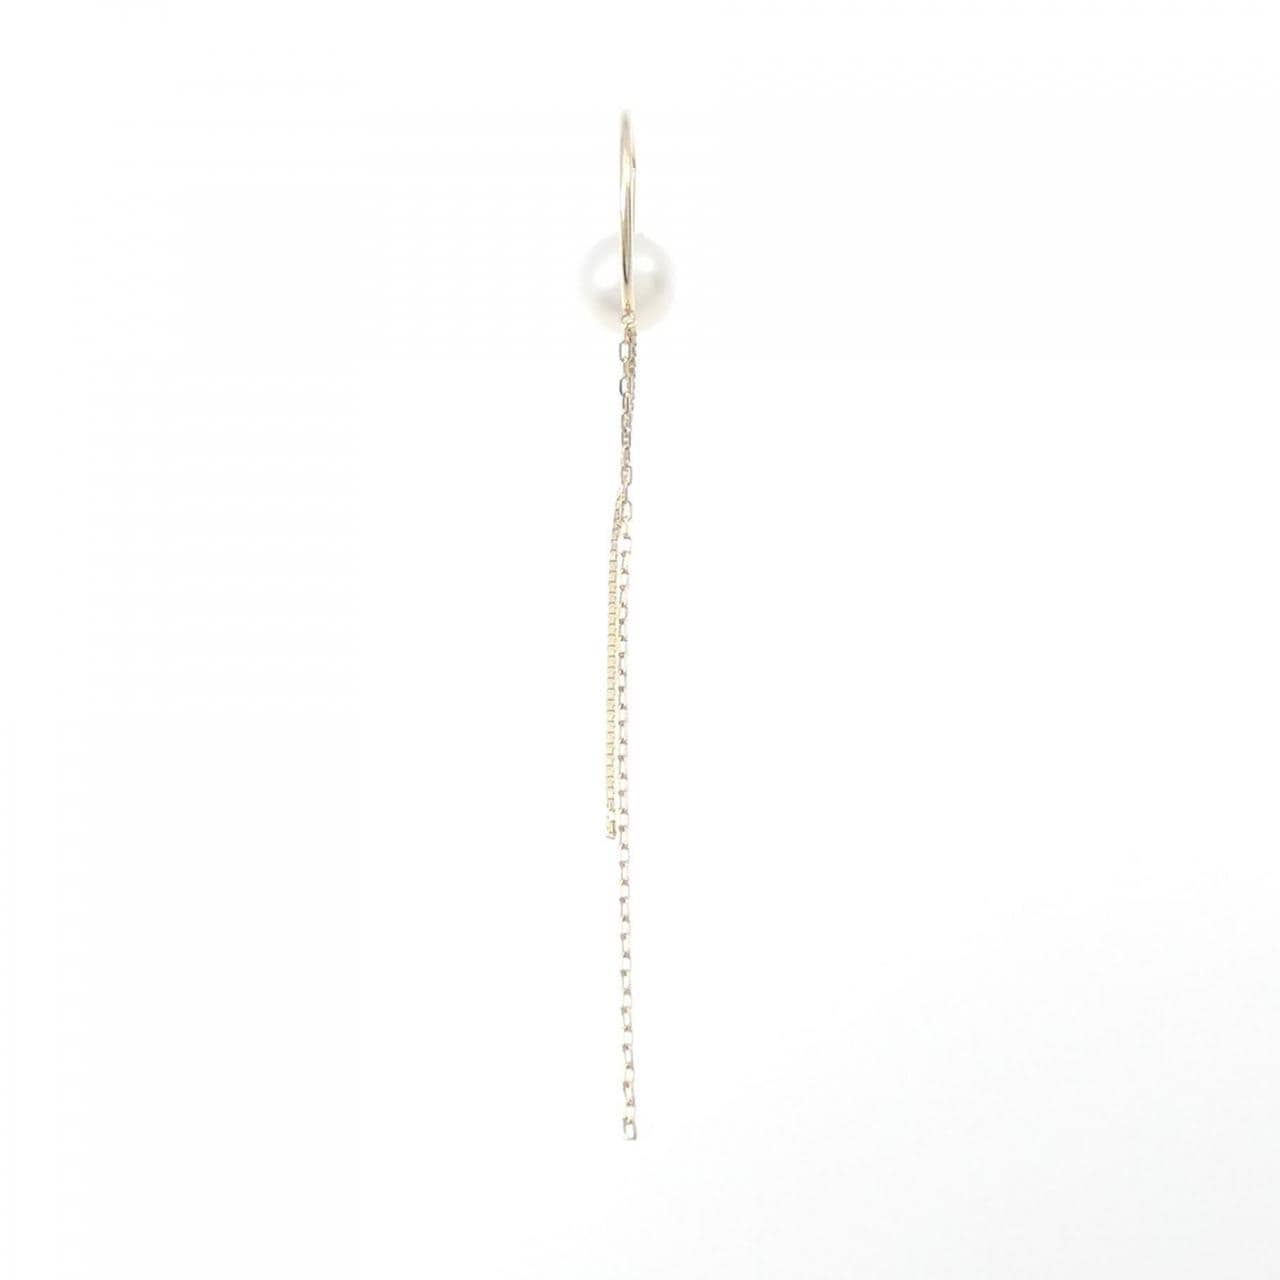 Hirotaka Akoya pearl earrings, one ear, 7.6mm